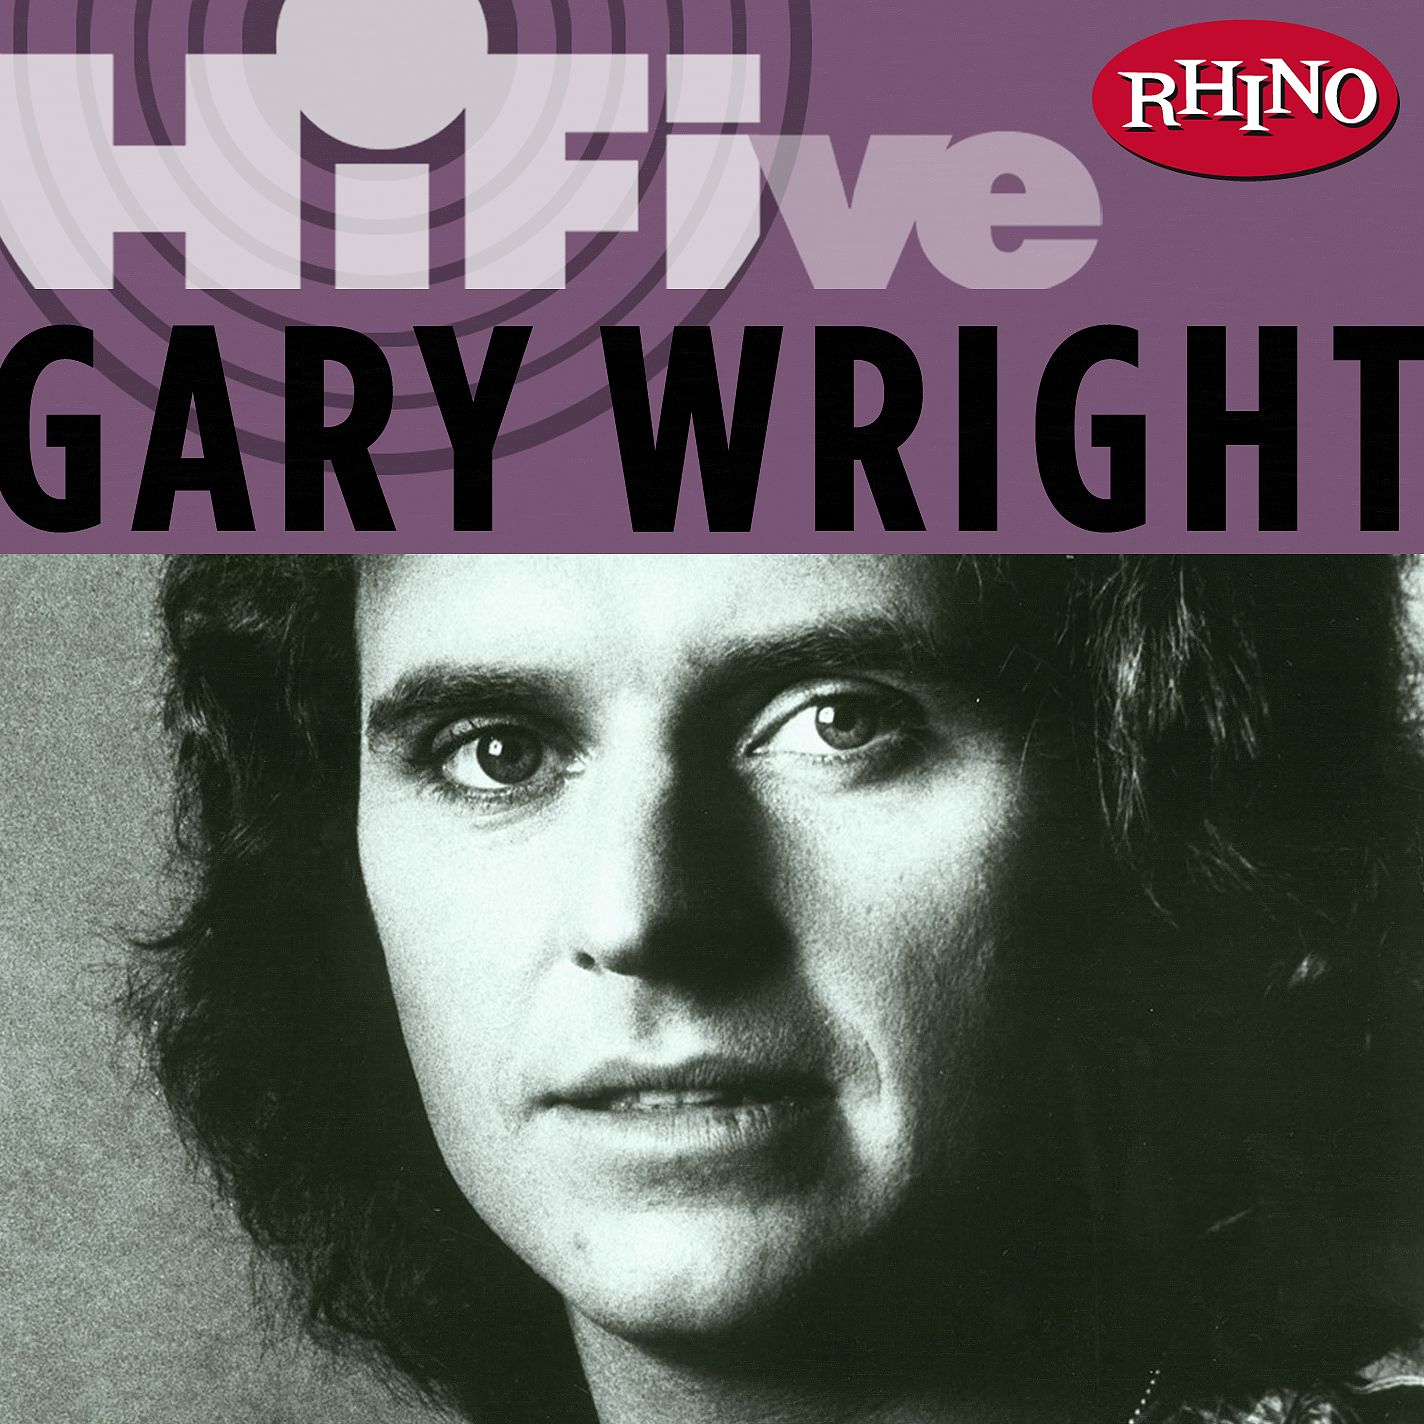 <b>Gary Wright Gary Wright</b> Rhino HiFive <b>Gary Wright</b> 2006 maniadbcom - 332582_1_f